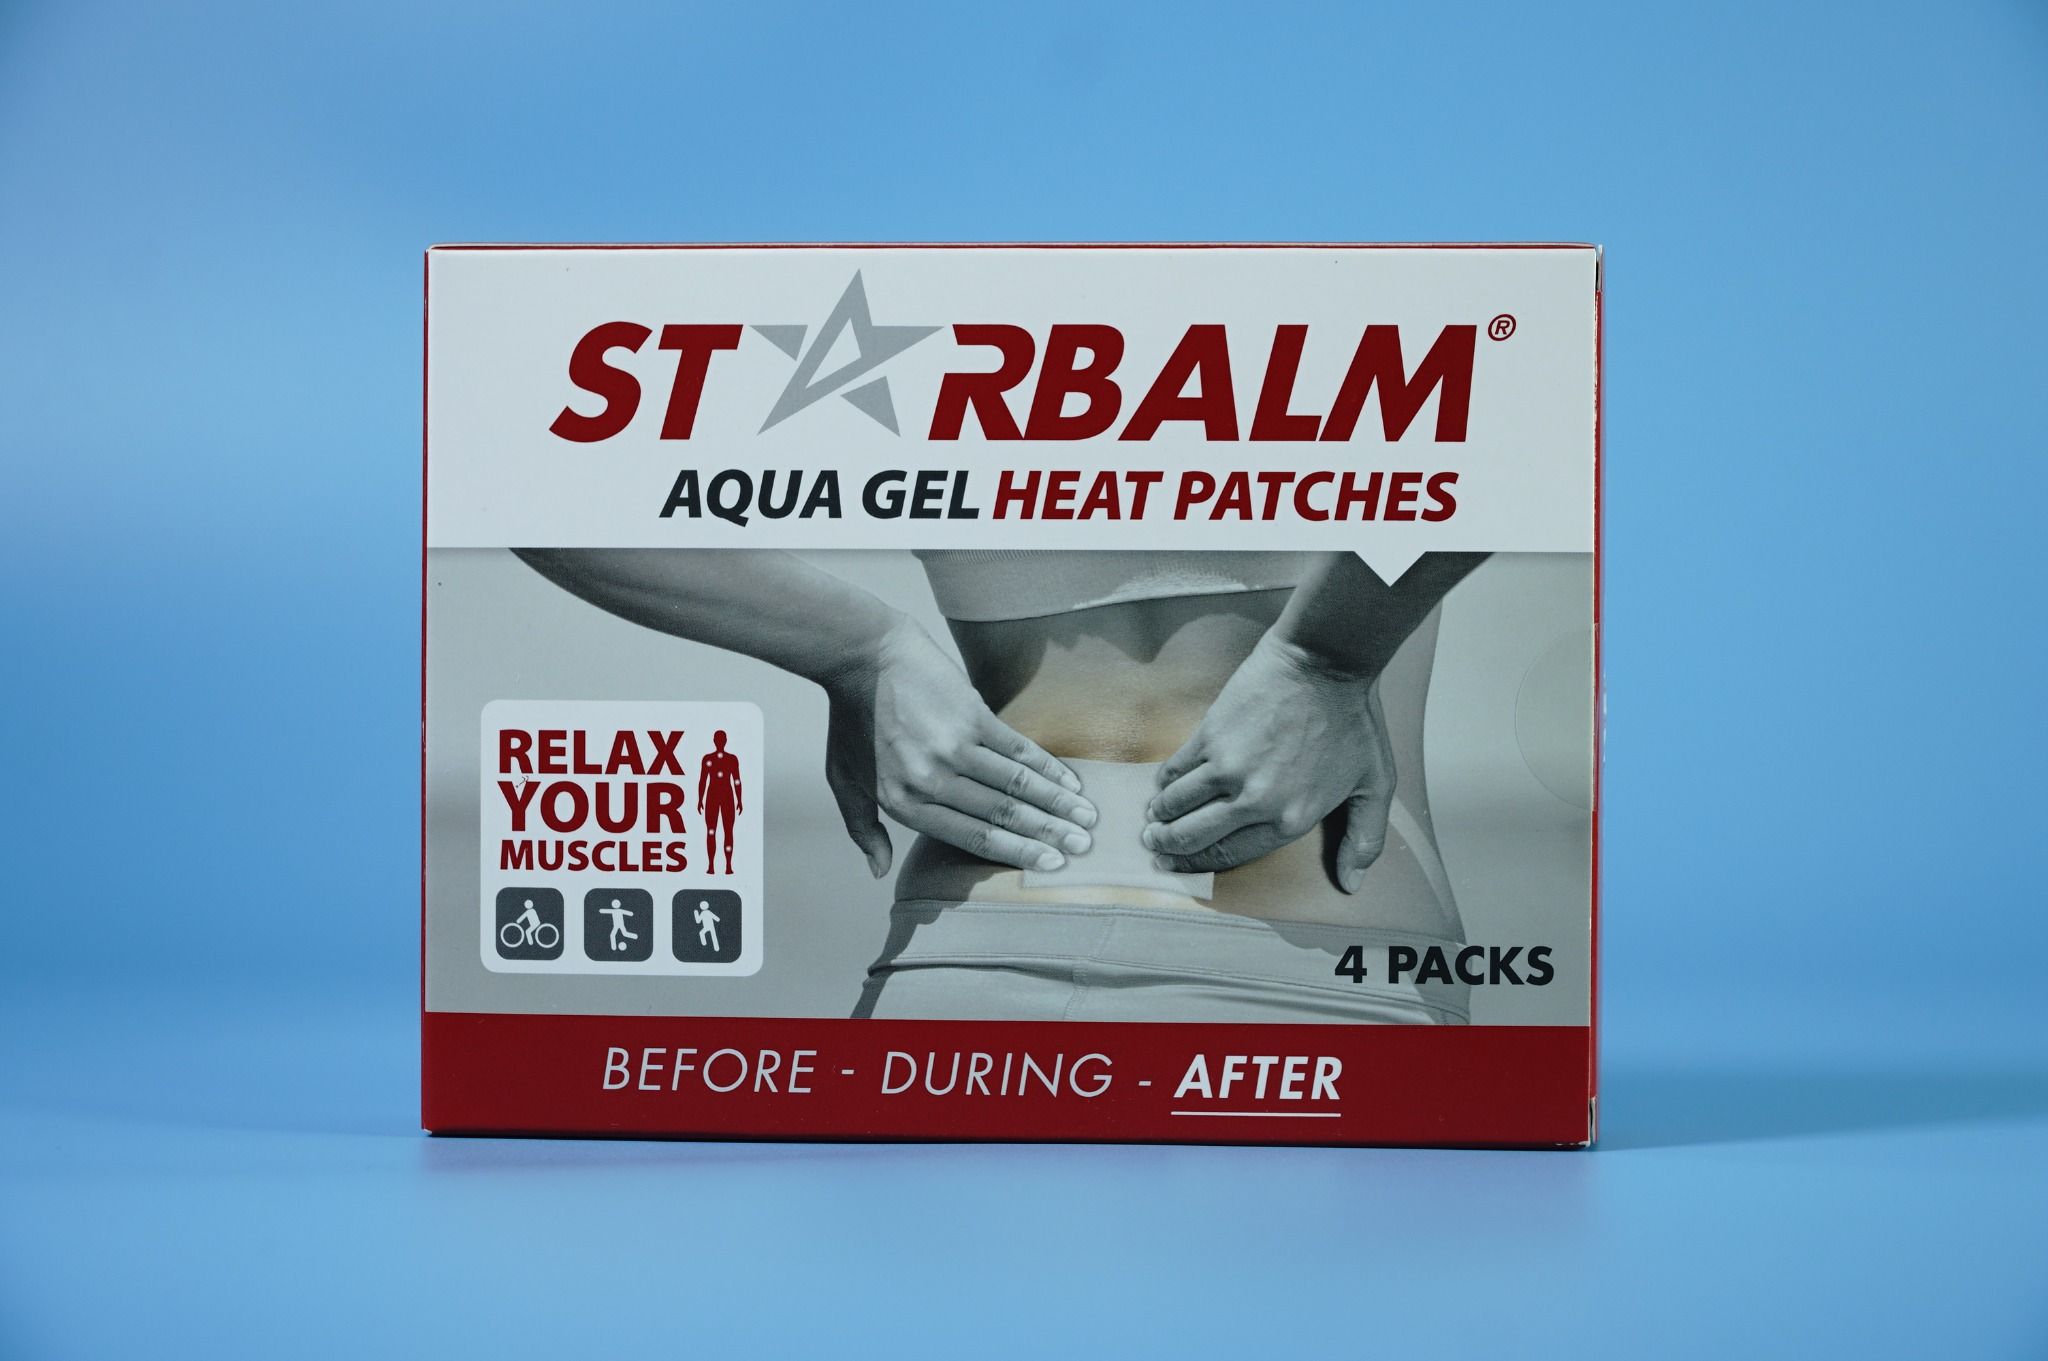  Miếng dán xoa bóp nhiệt Starbalm HEAT PATCH 4 miếng dán - After giảm đau, tan bầm, nhanh hồi phục 